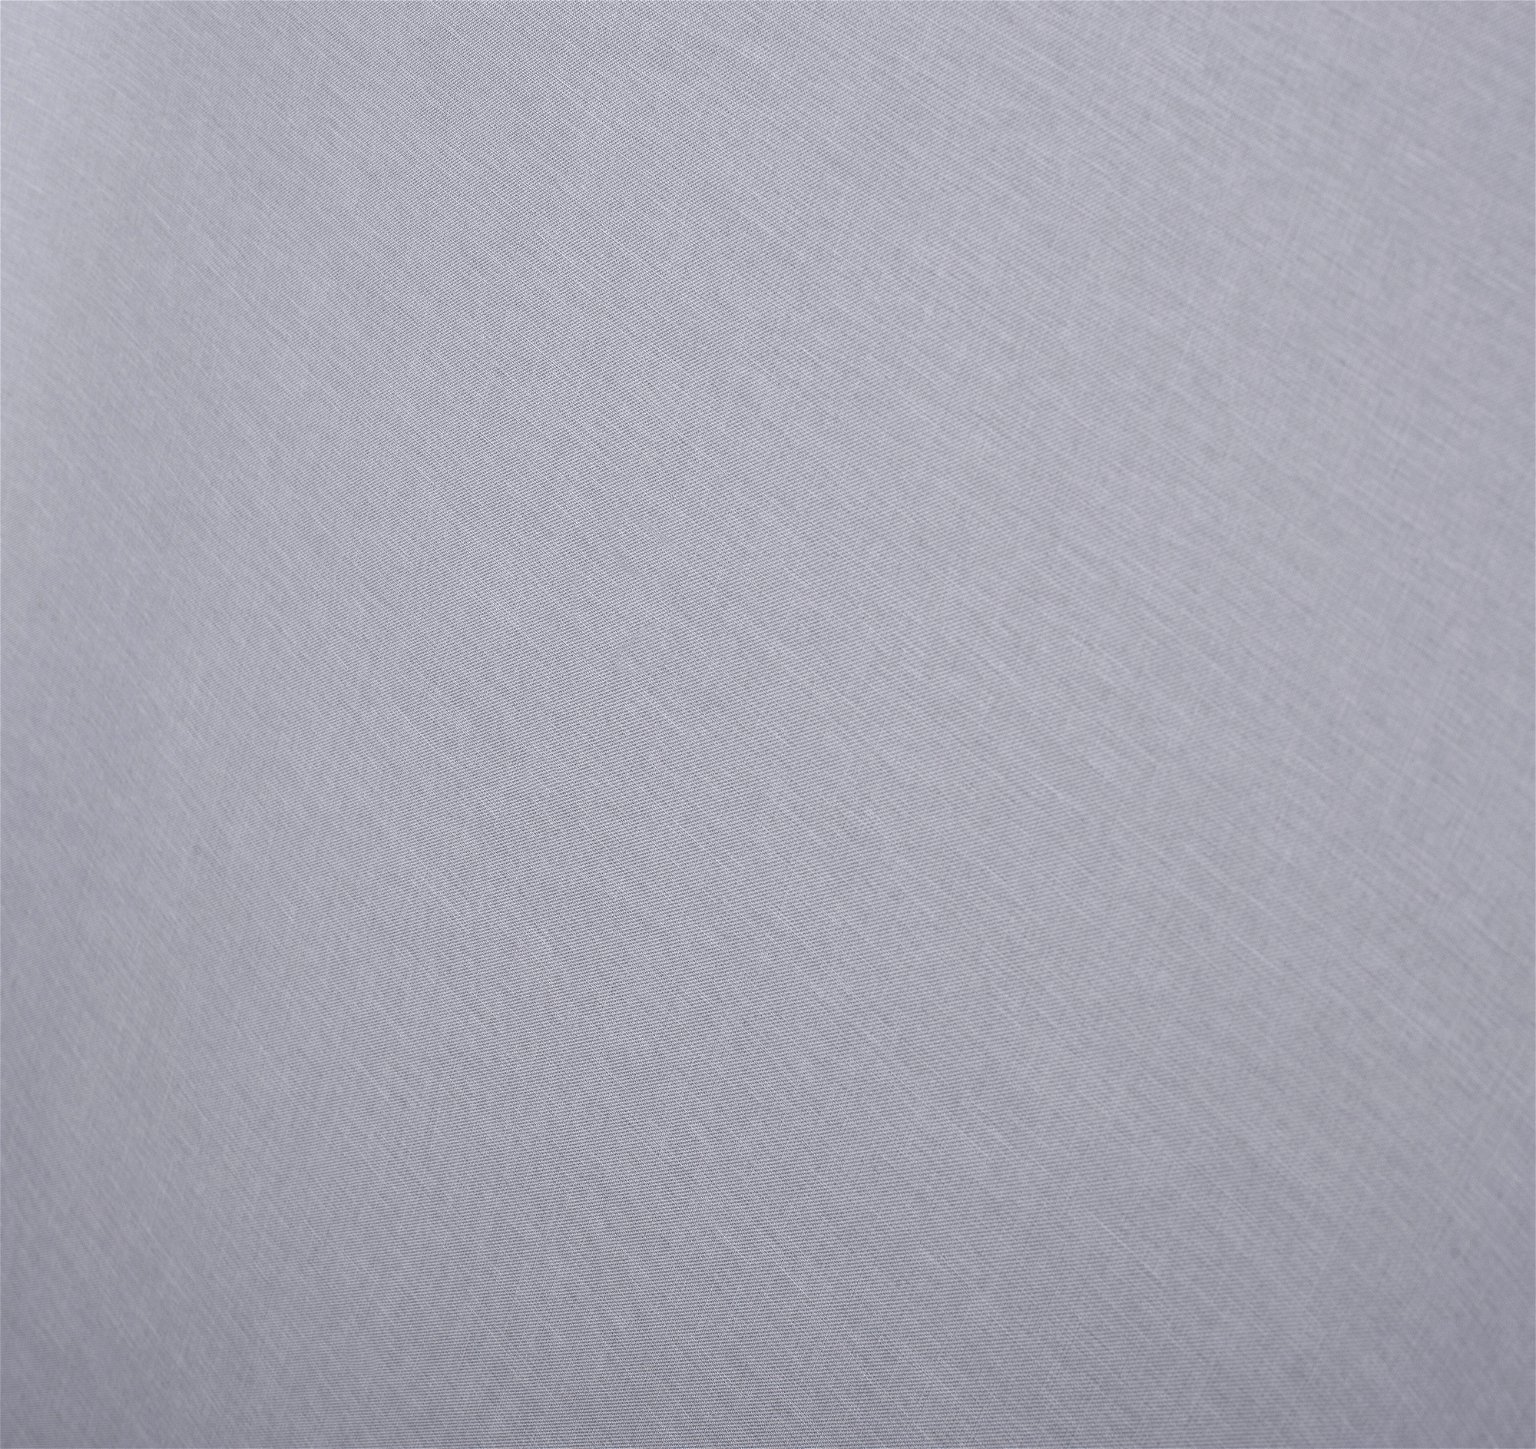 Klasikinė ritininė užuolaida MILAN, šv. pilkos sp., 120 x 170 cm, 100 % poliesteris - 4